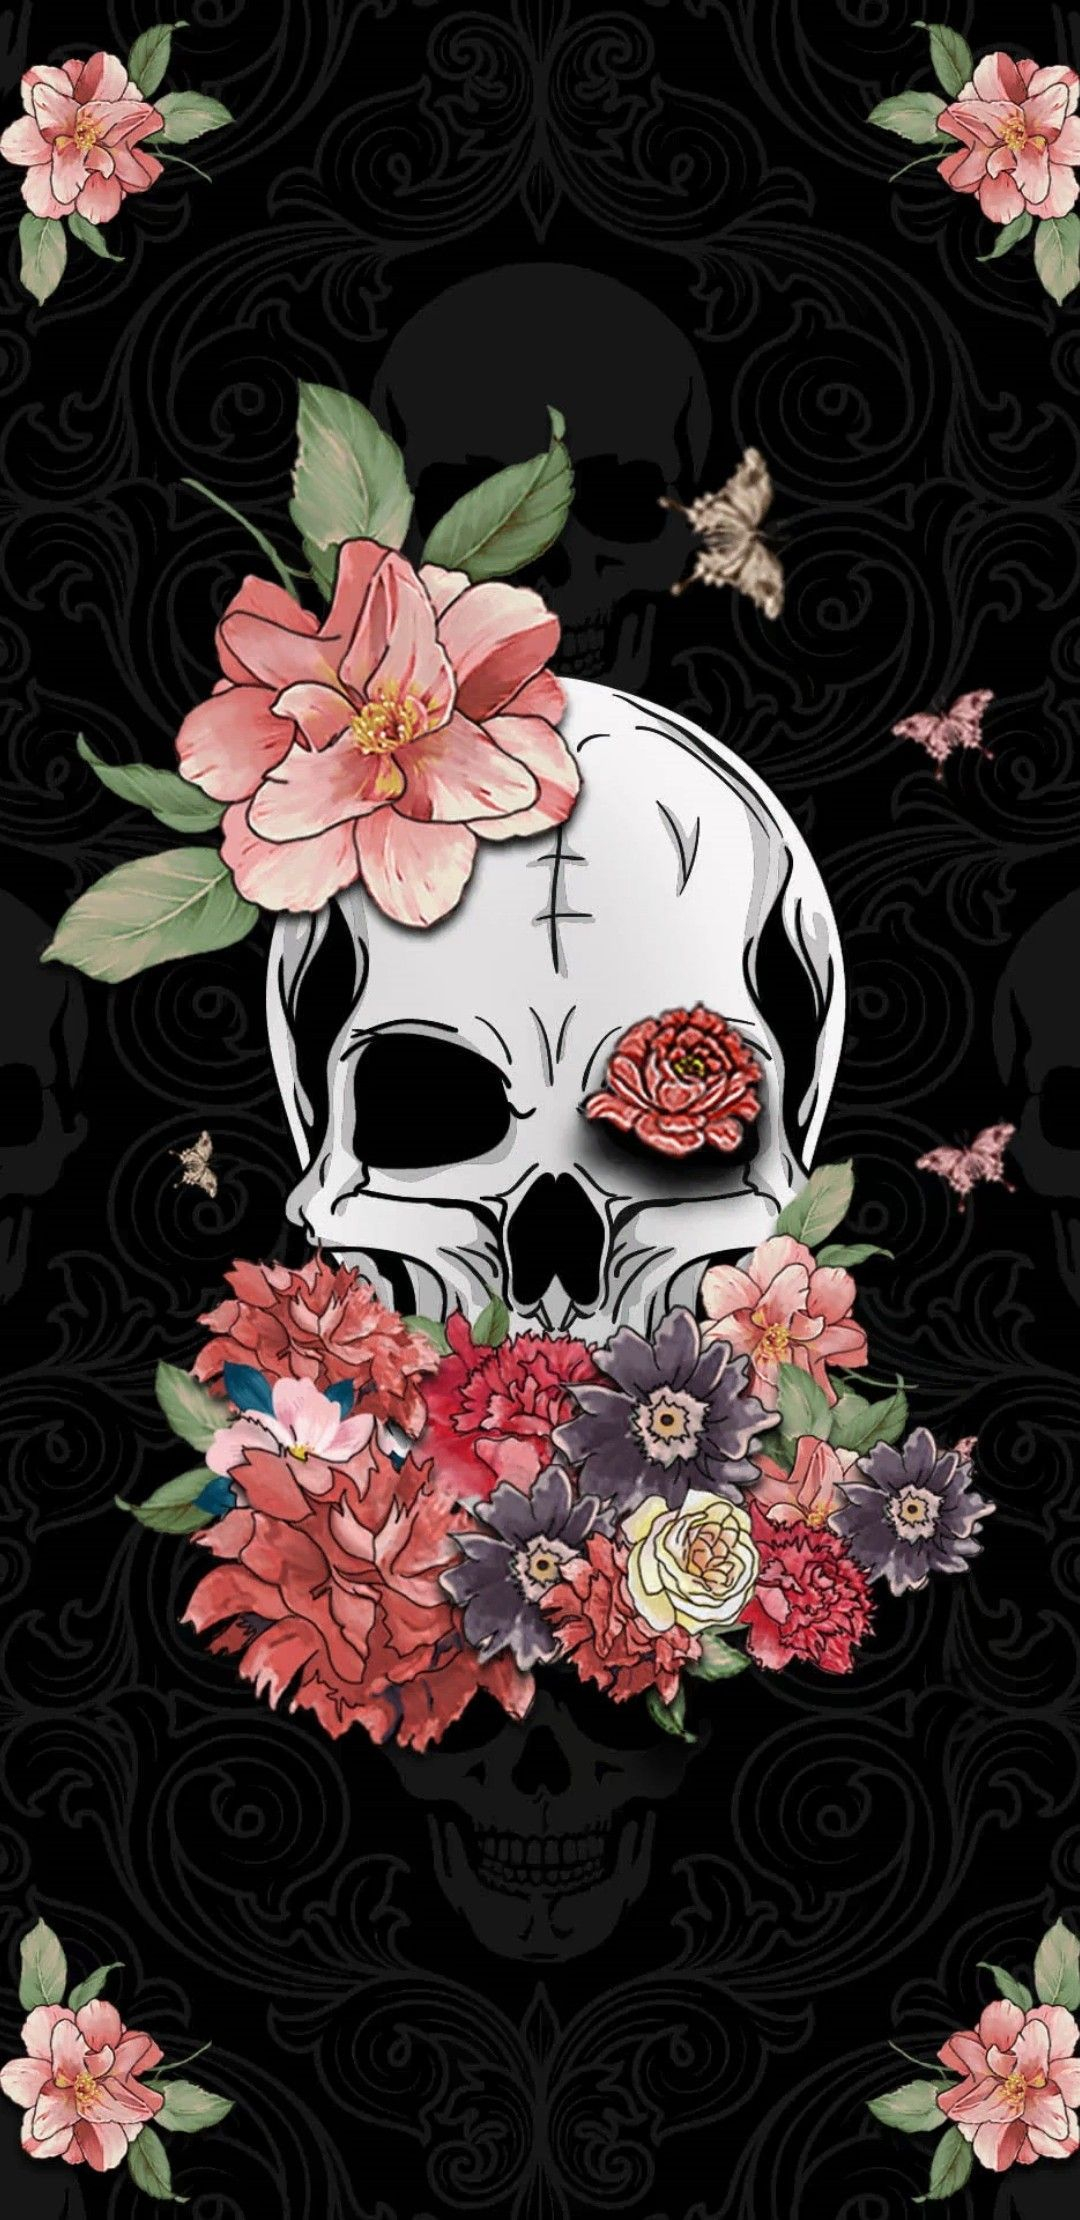 1080x2220 Vintage Floral Skull Wallpapers Top Free Vintage Floral Skull Backgrounds